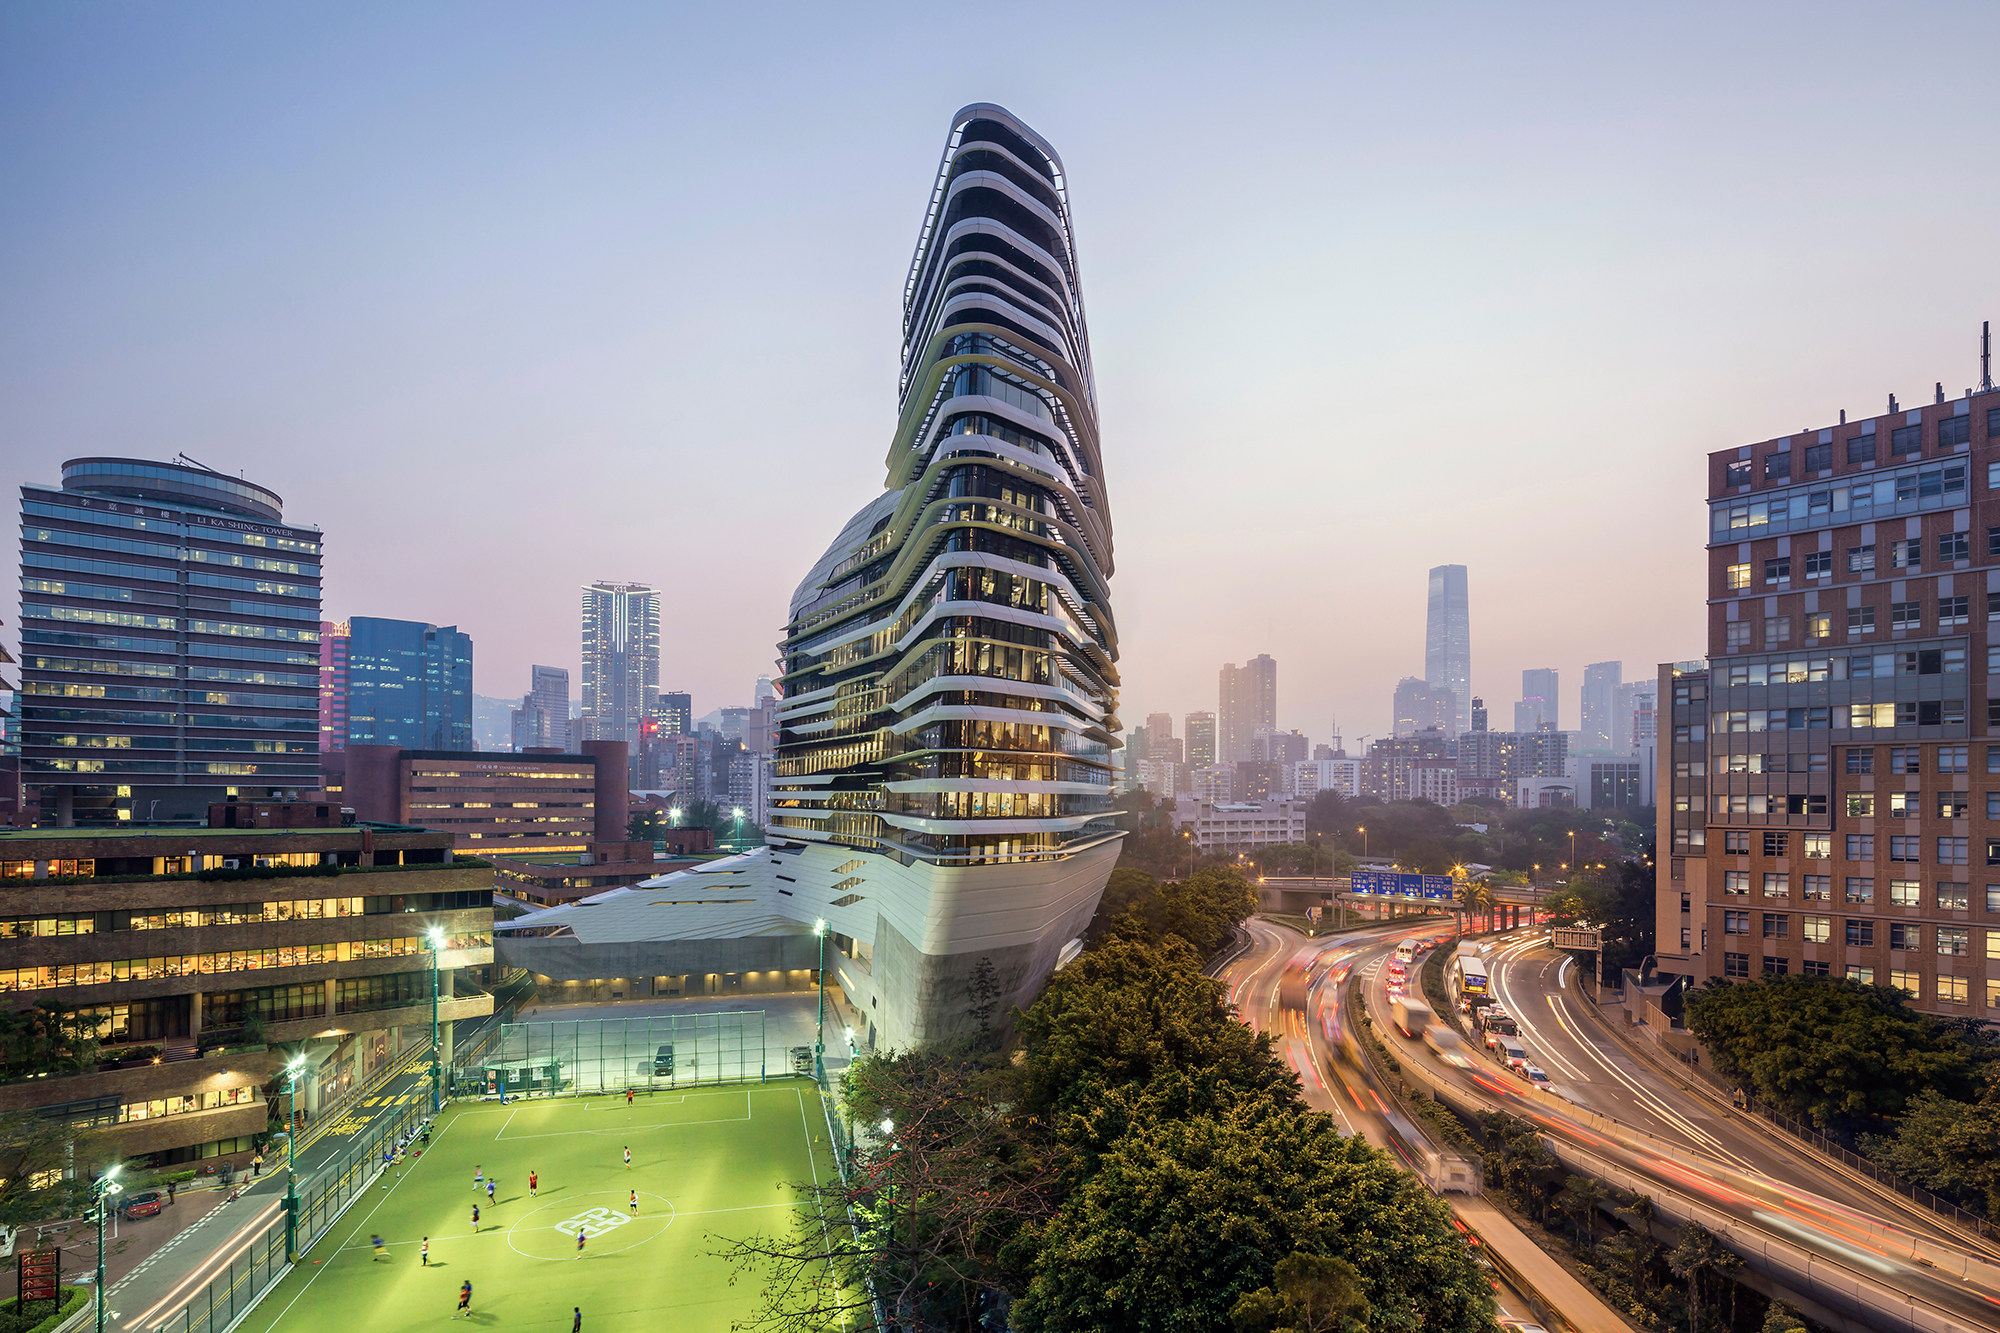 Jockey Club Innovation Tower, at Hong Kong Polytechnic University in Hong Kong.